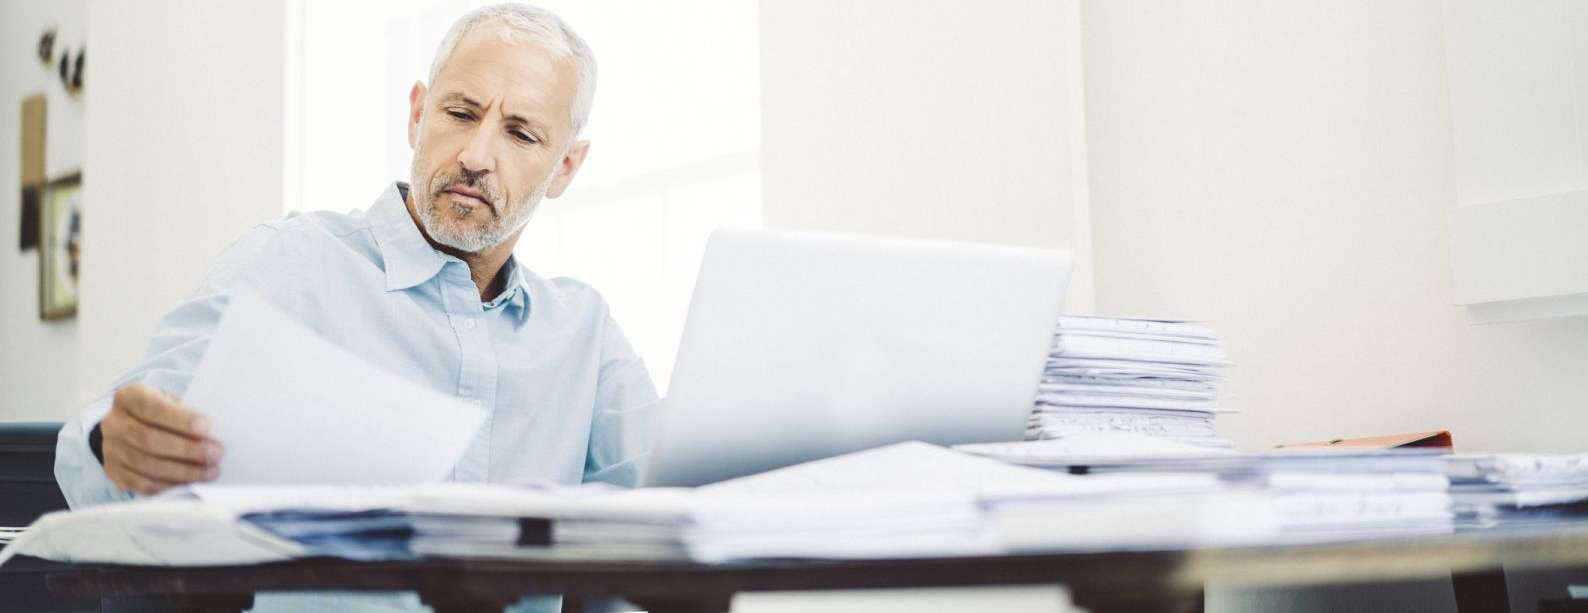 Ein Mann schaut in seine Unterlagen, während er an einem Schreibtisch sitzt, auf dem Dokumente verstreut sind und ein Laptop steht